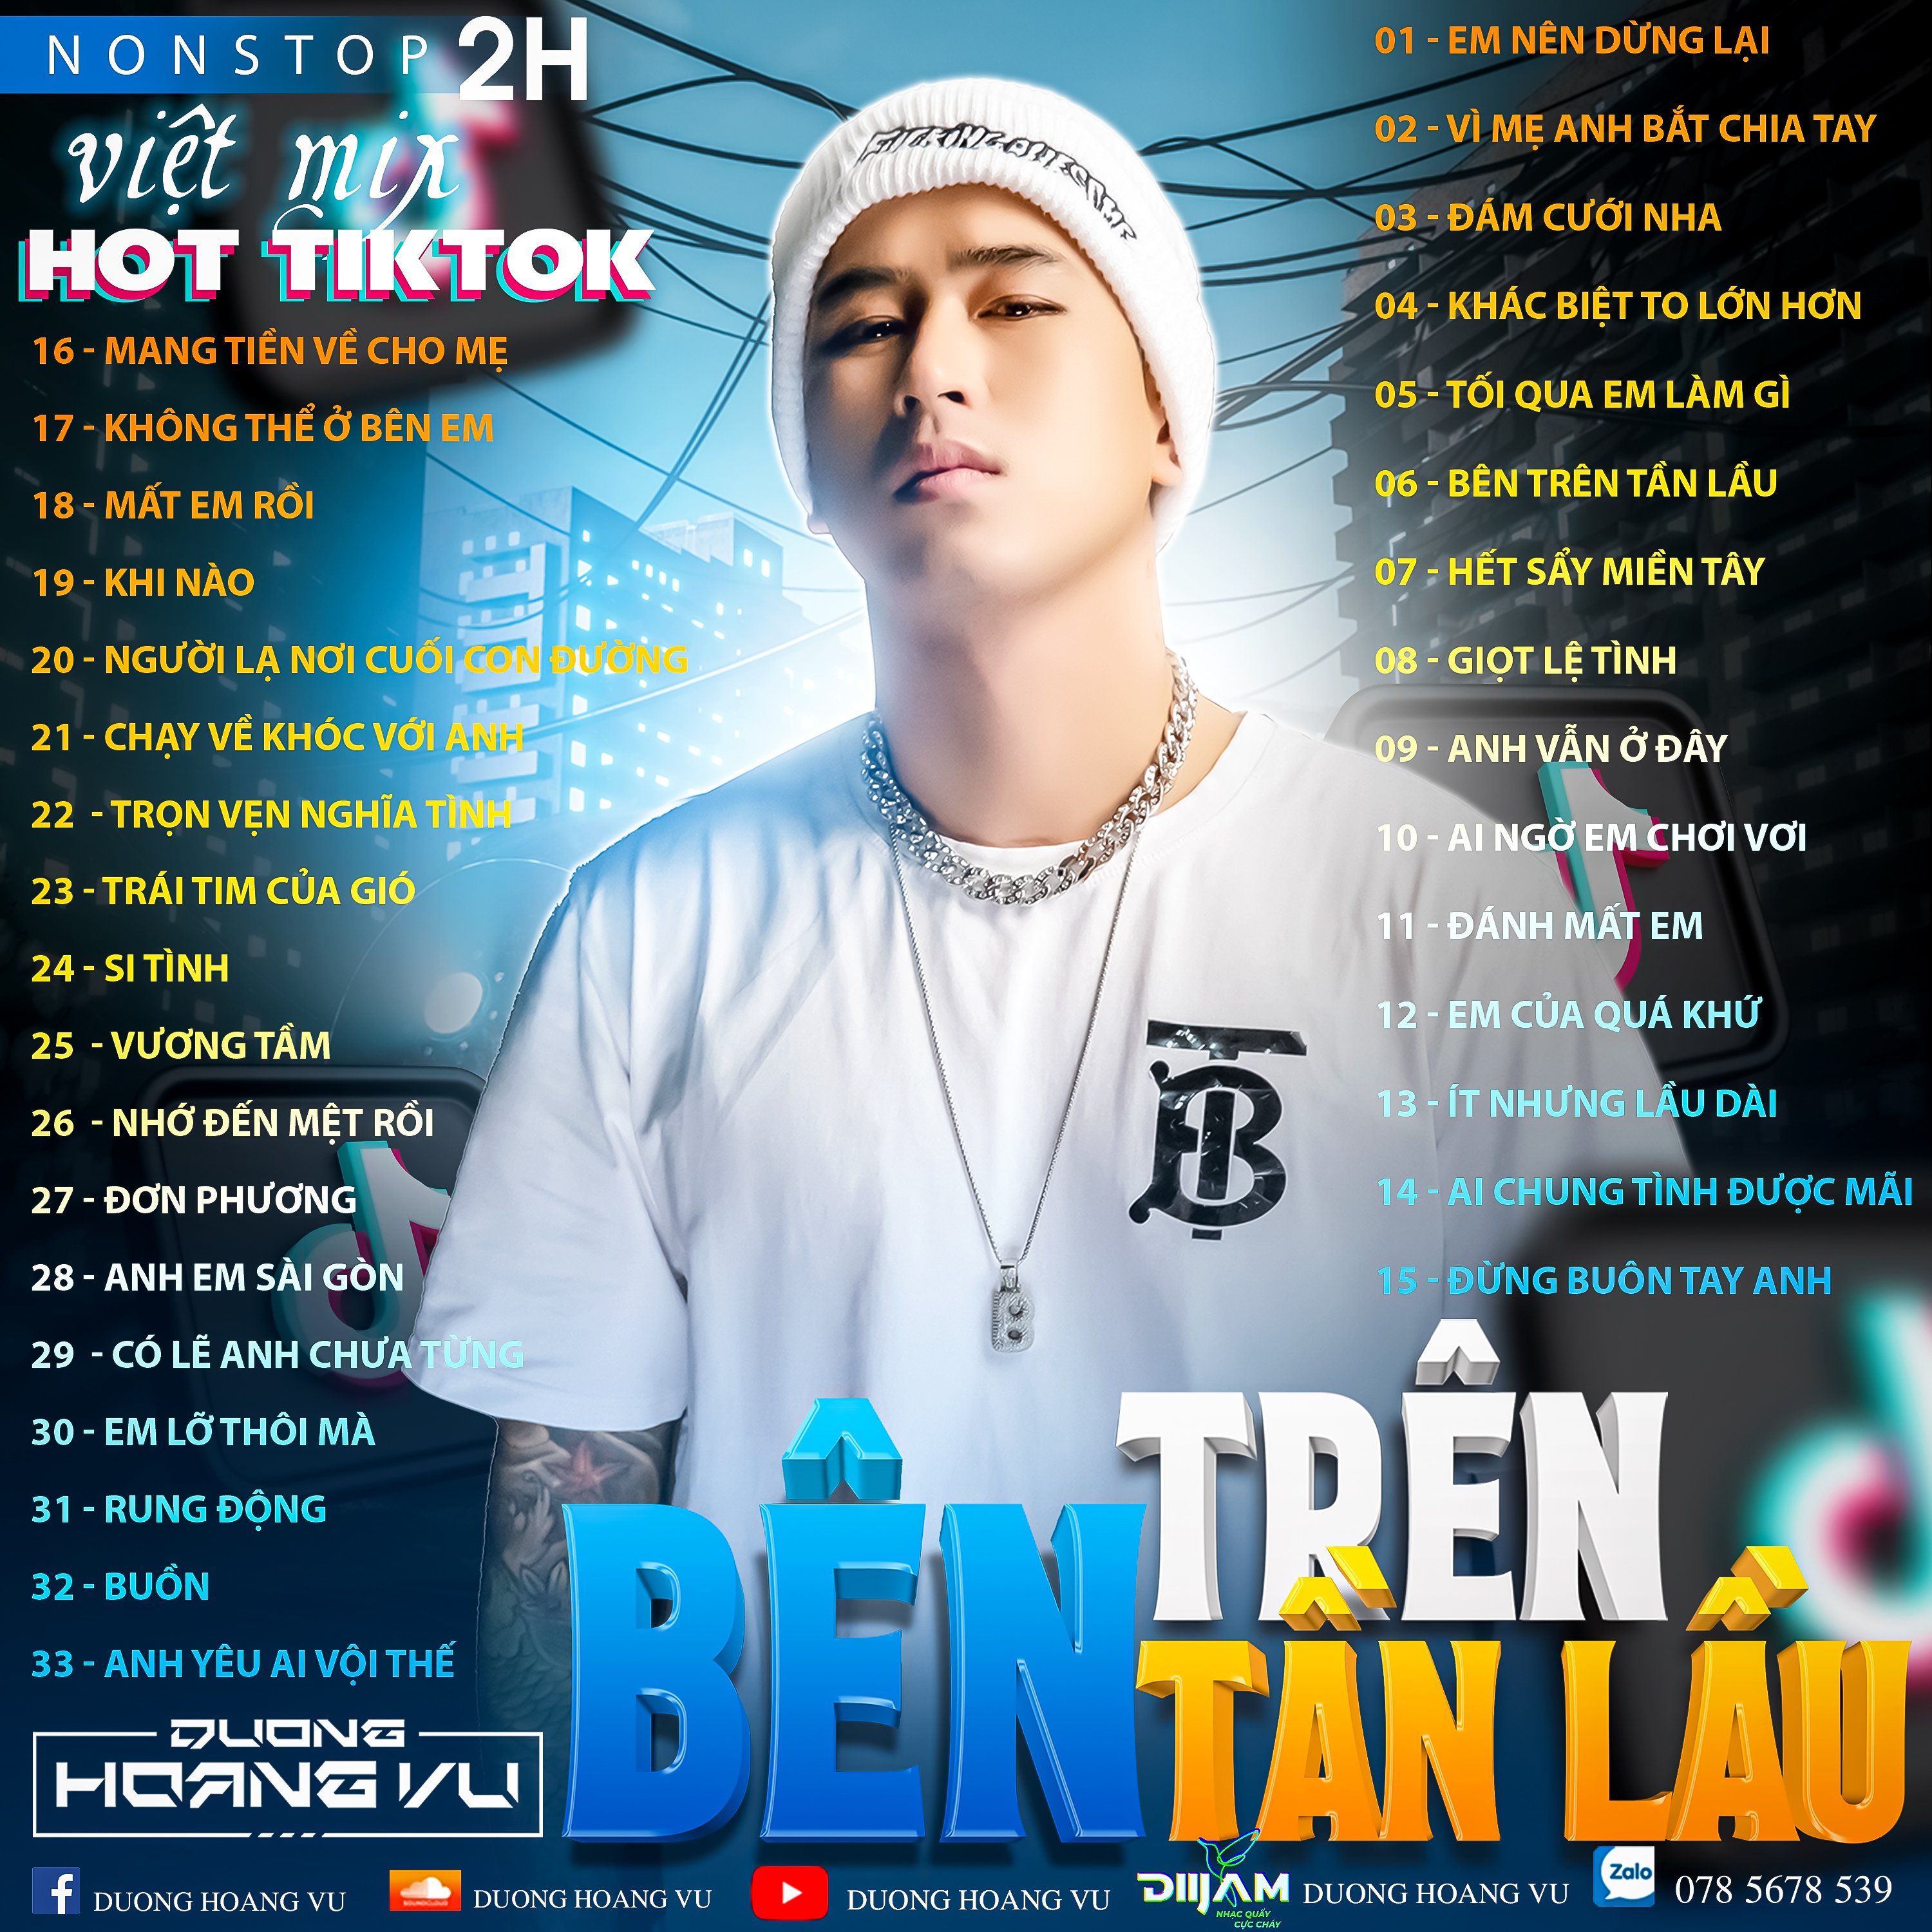 אראפקאפיע (Demo ) Nst Việt Mix Hot tiktok 2h - 2022 - DJ Dương Hoàng Vũ Mix Mua Full IB Zalo 078.5678.539